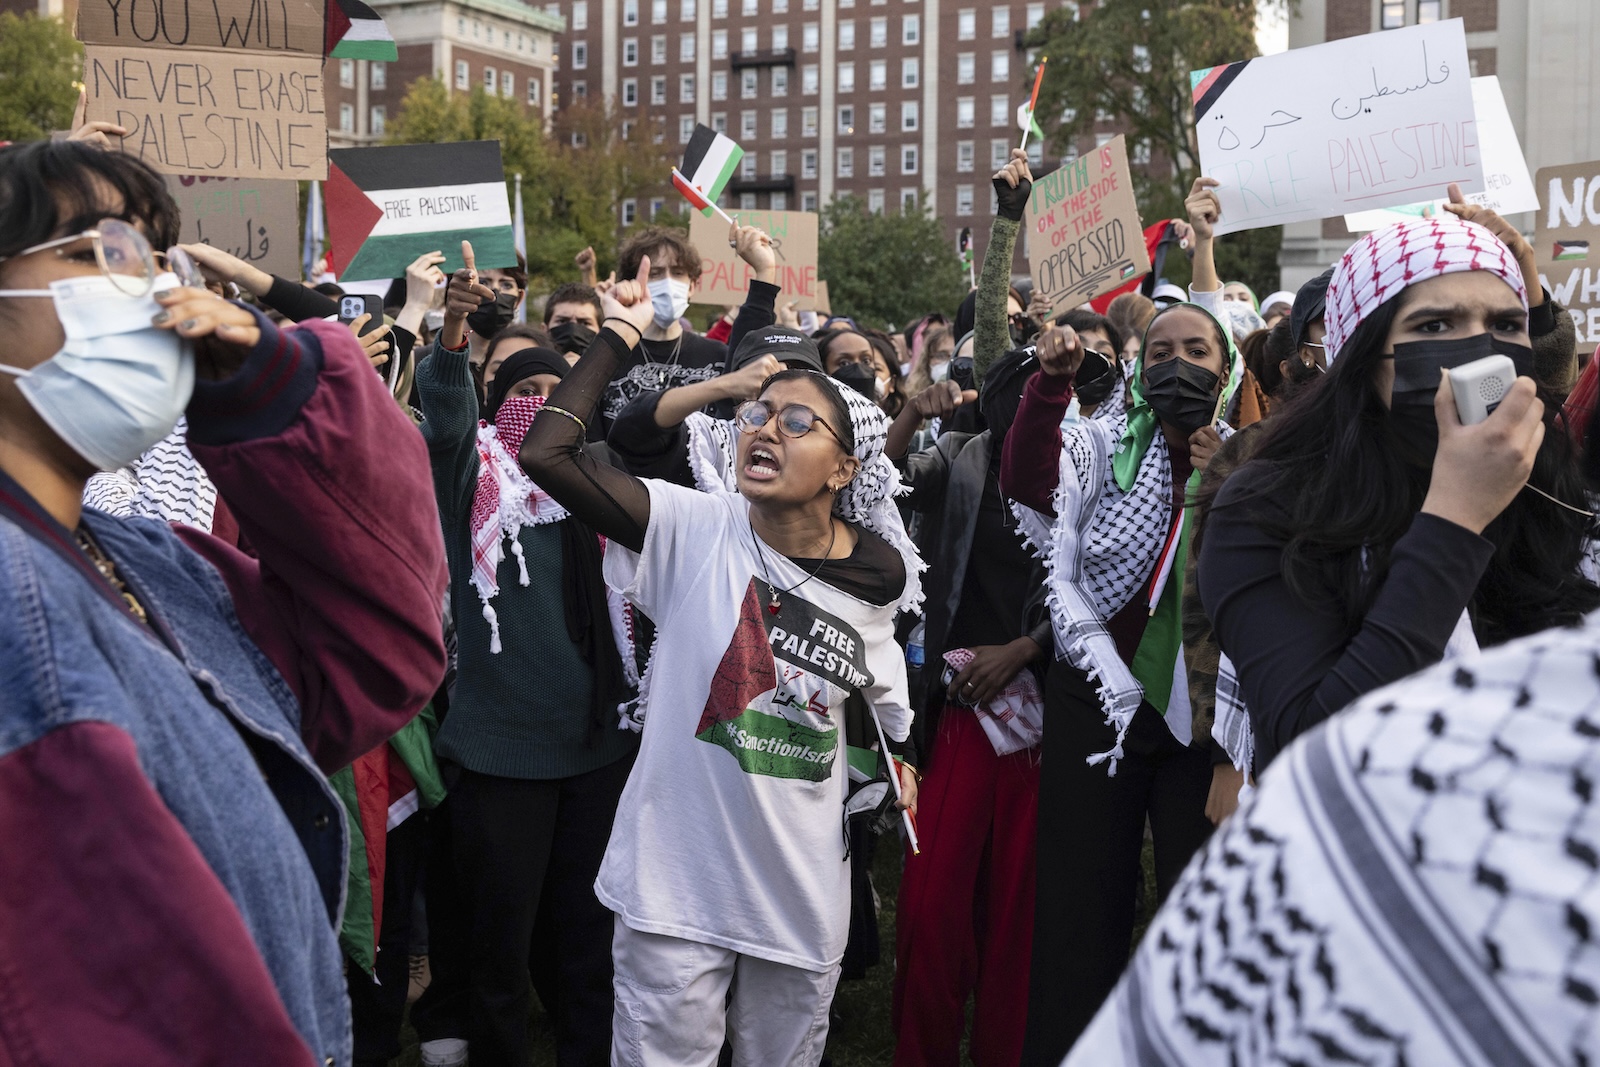 γάζα: πώς οι αστυνομικές επιδρομές μπορούν να πυροδοτήσουν το φοιτητικό κίνημα διαμαρτυρίας